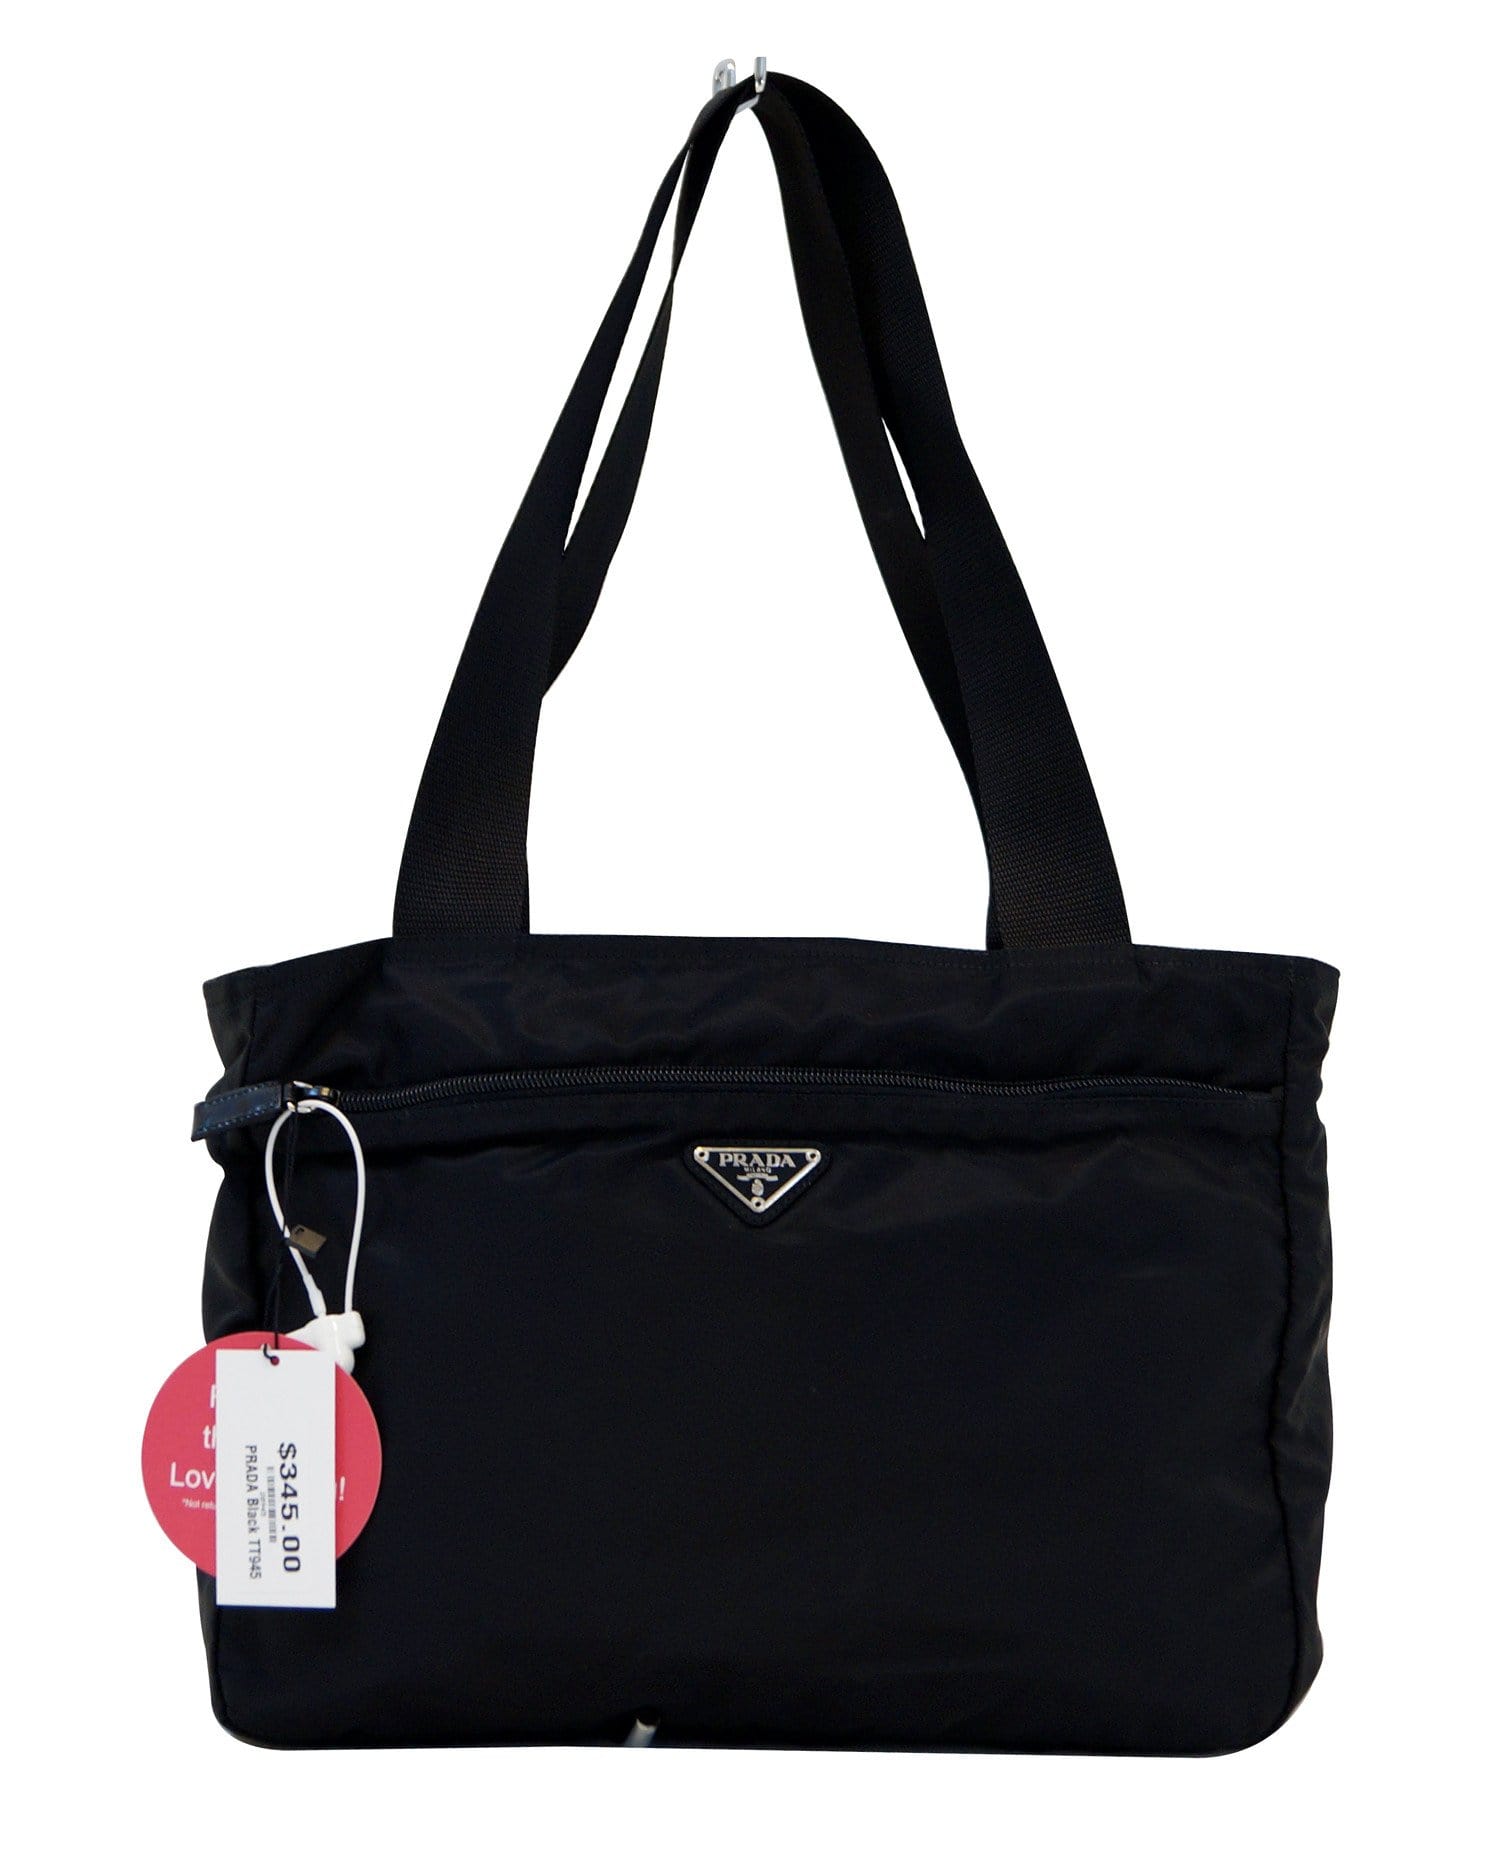 Prada Nylon Black Tote Shoulder Bag Vintage - Final Call | Dallas Designer Handbags